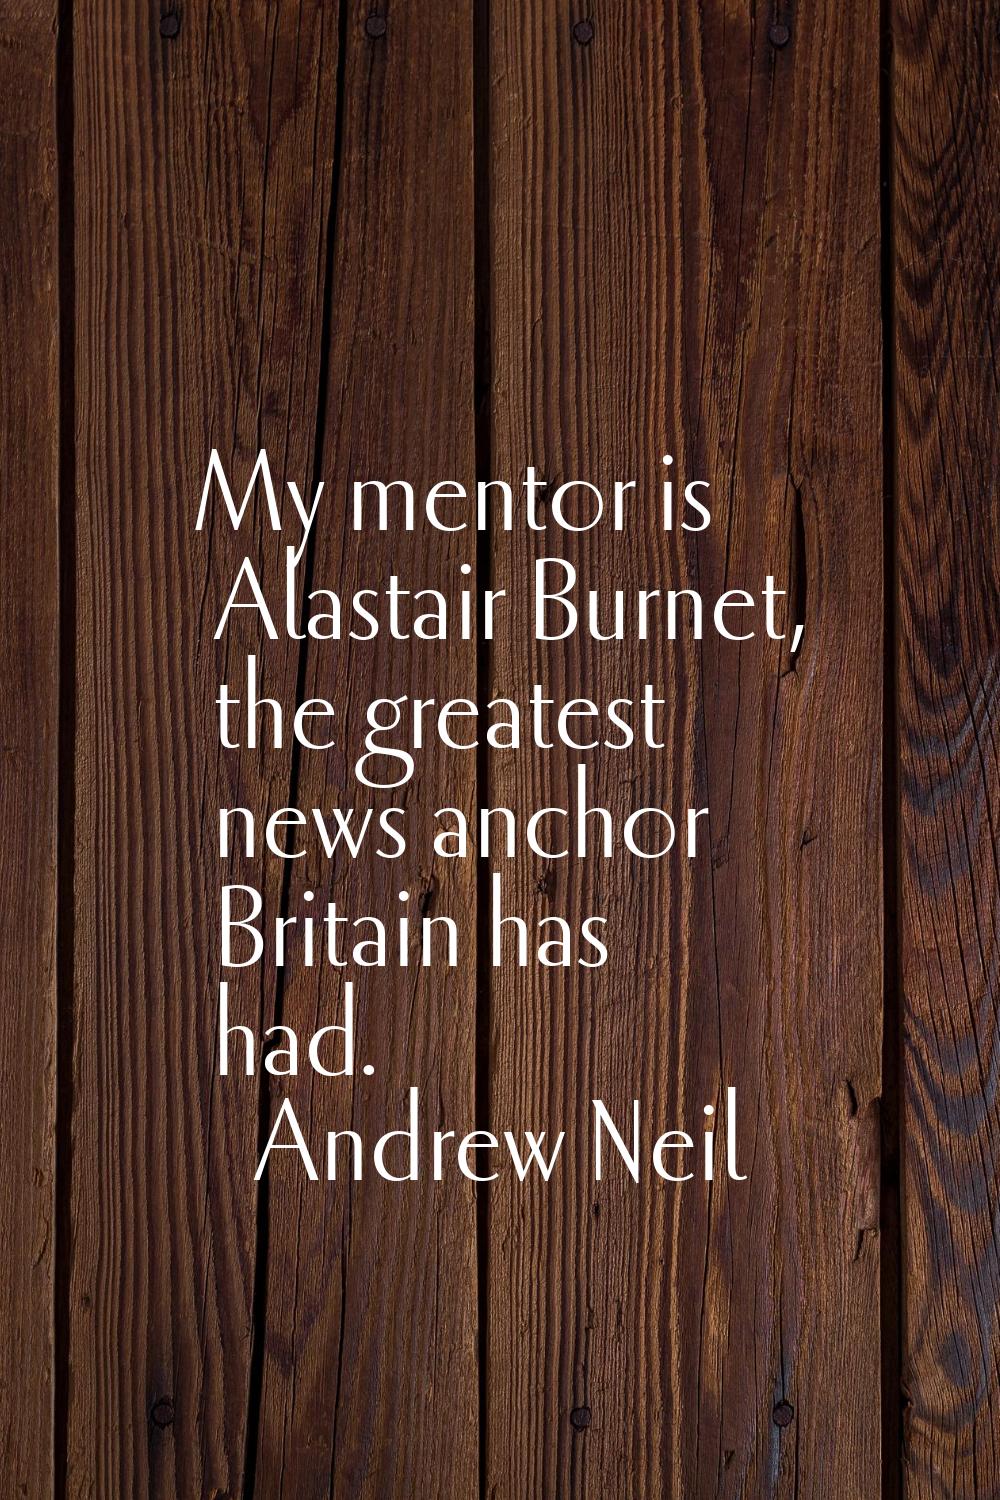 My mentor is Alastair Burnet, the greatest news anchor Britain has had.